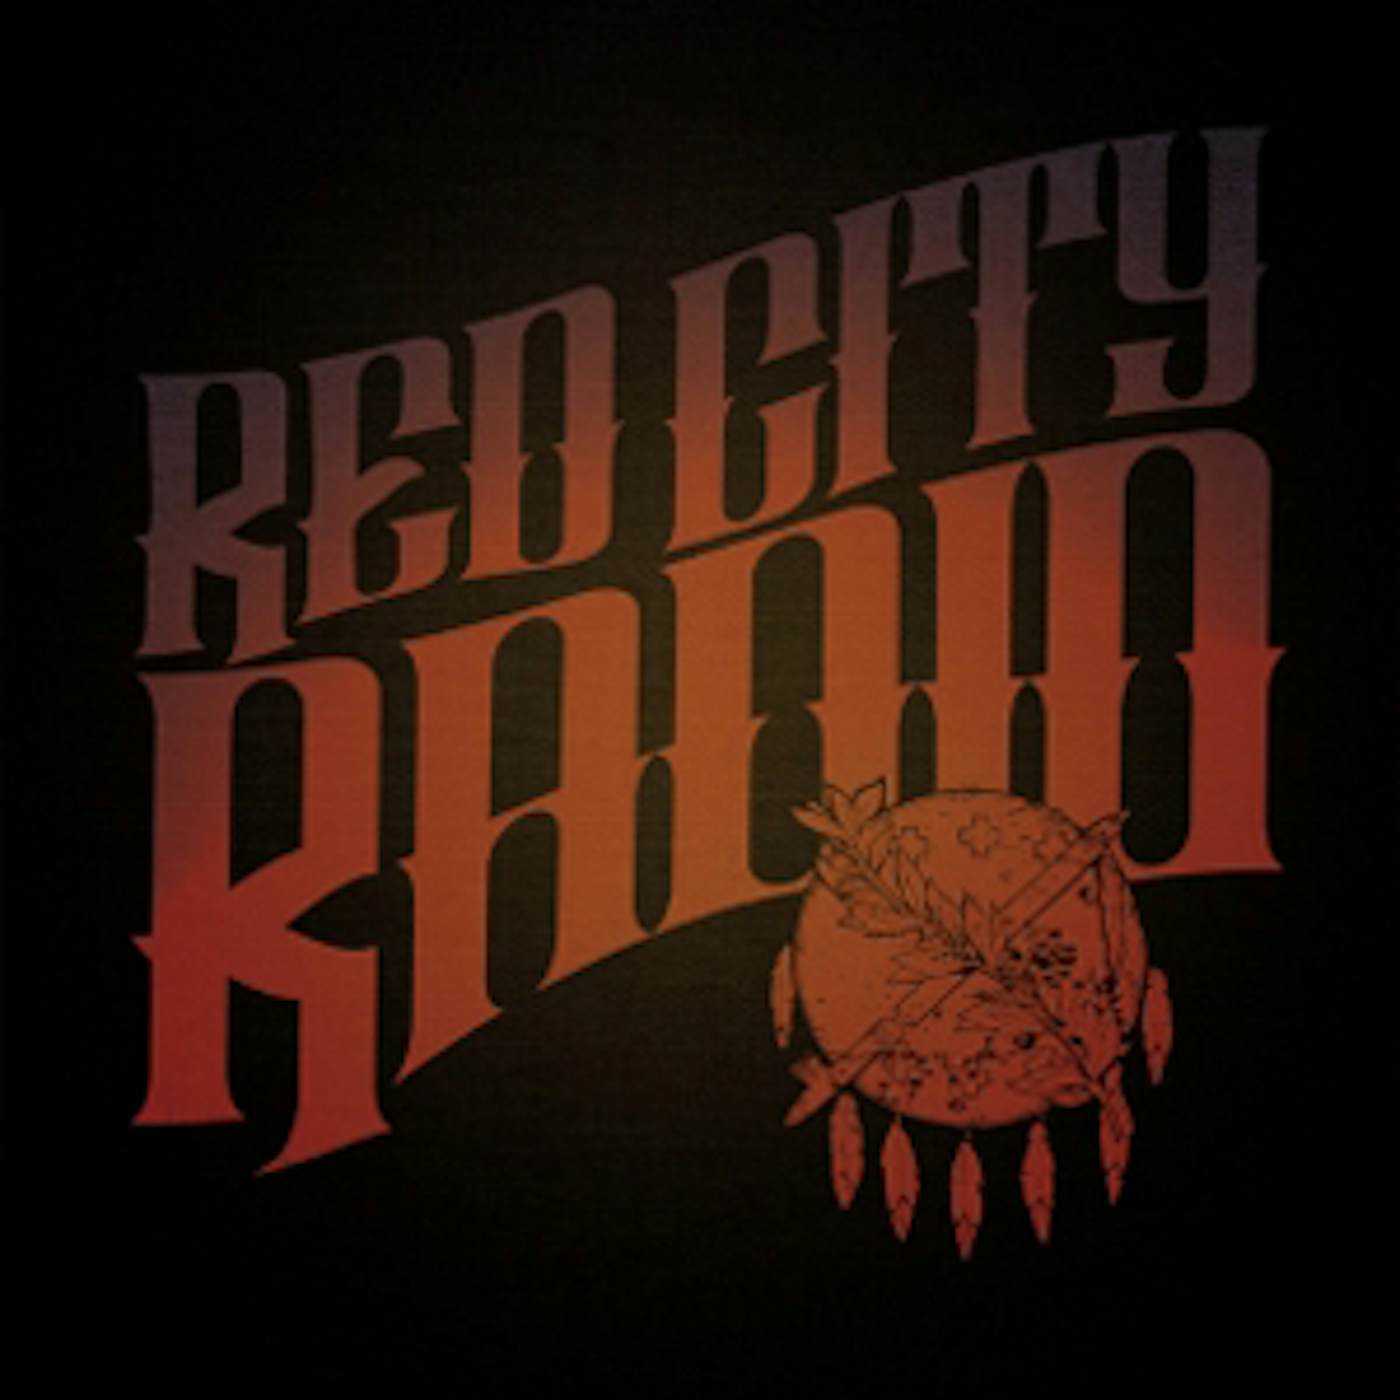 Red City Radio Vinyl Record